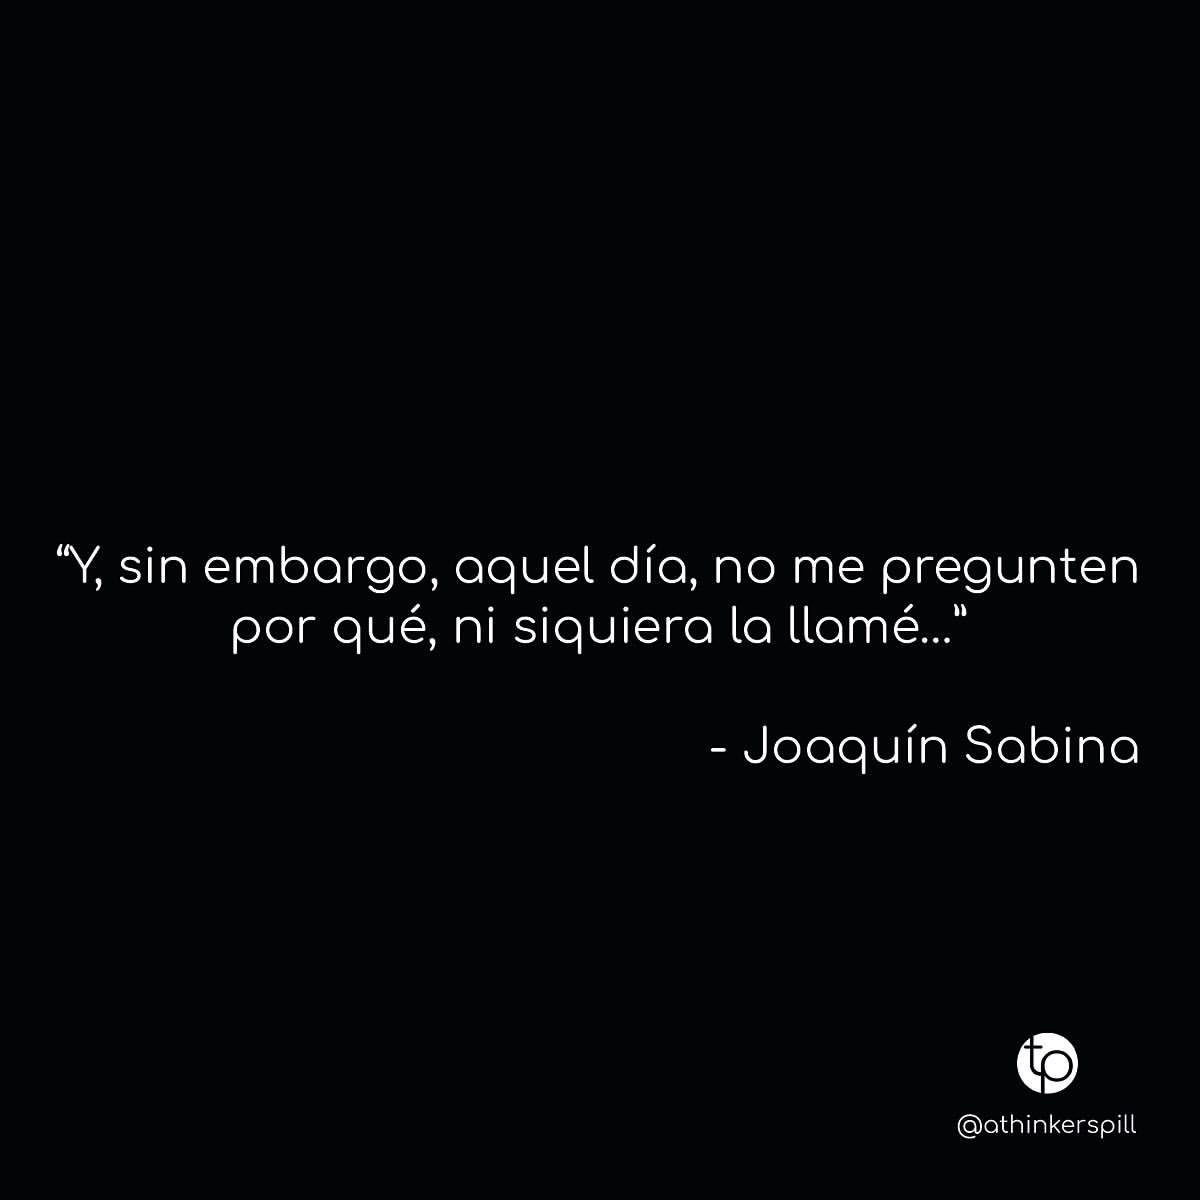 "Y, sin embargo, aquel día, no me pregunten por qué, ni siquiera la llamé..." Joaquín Sabina.